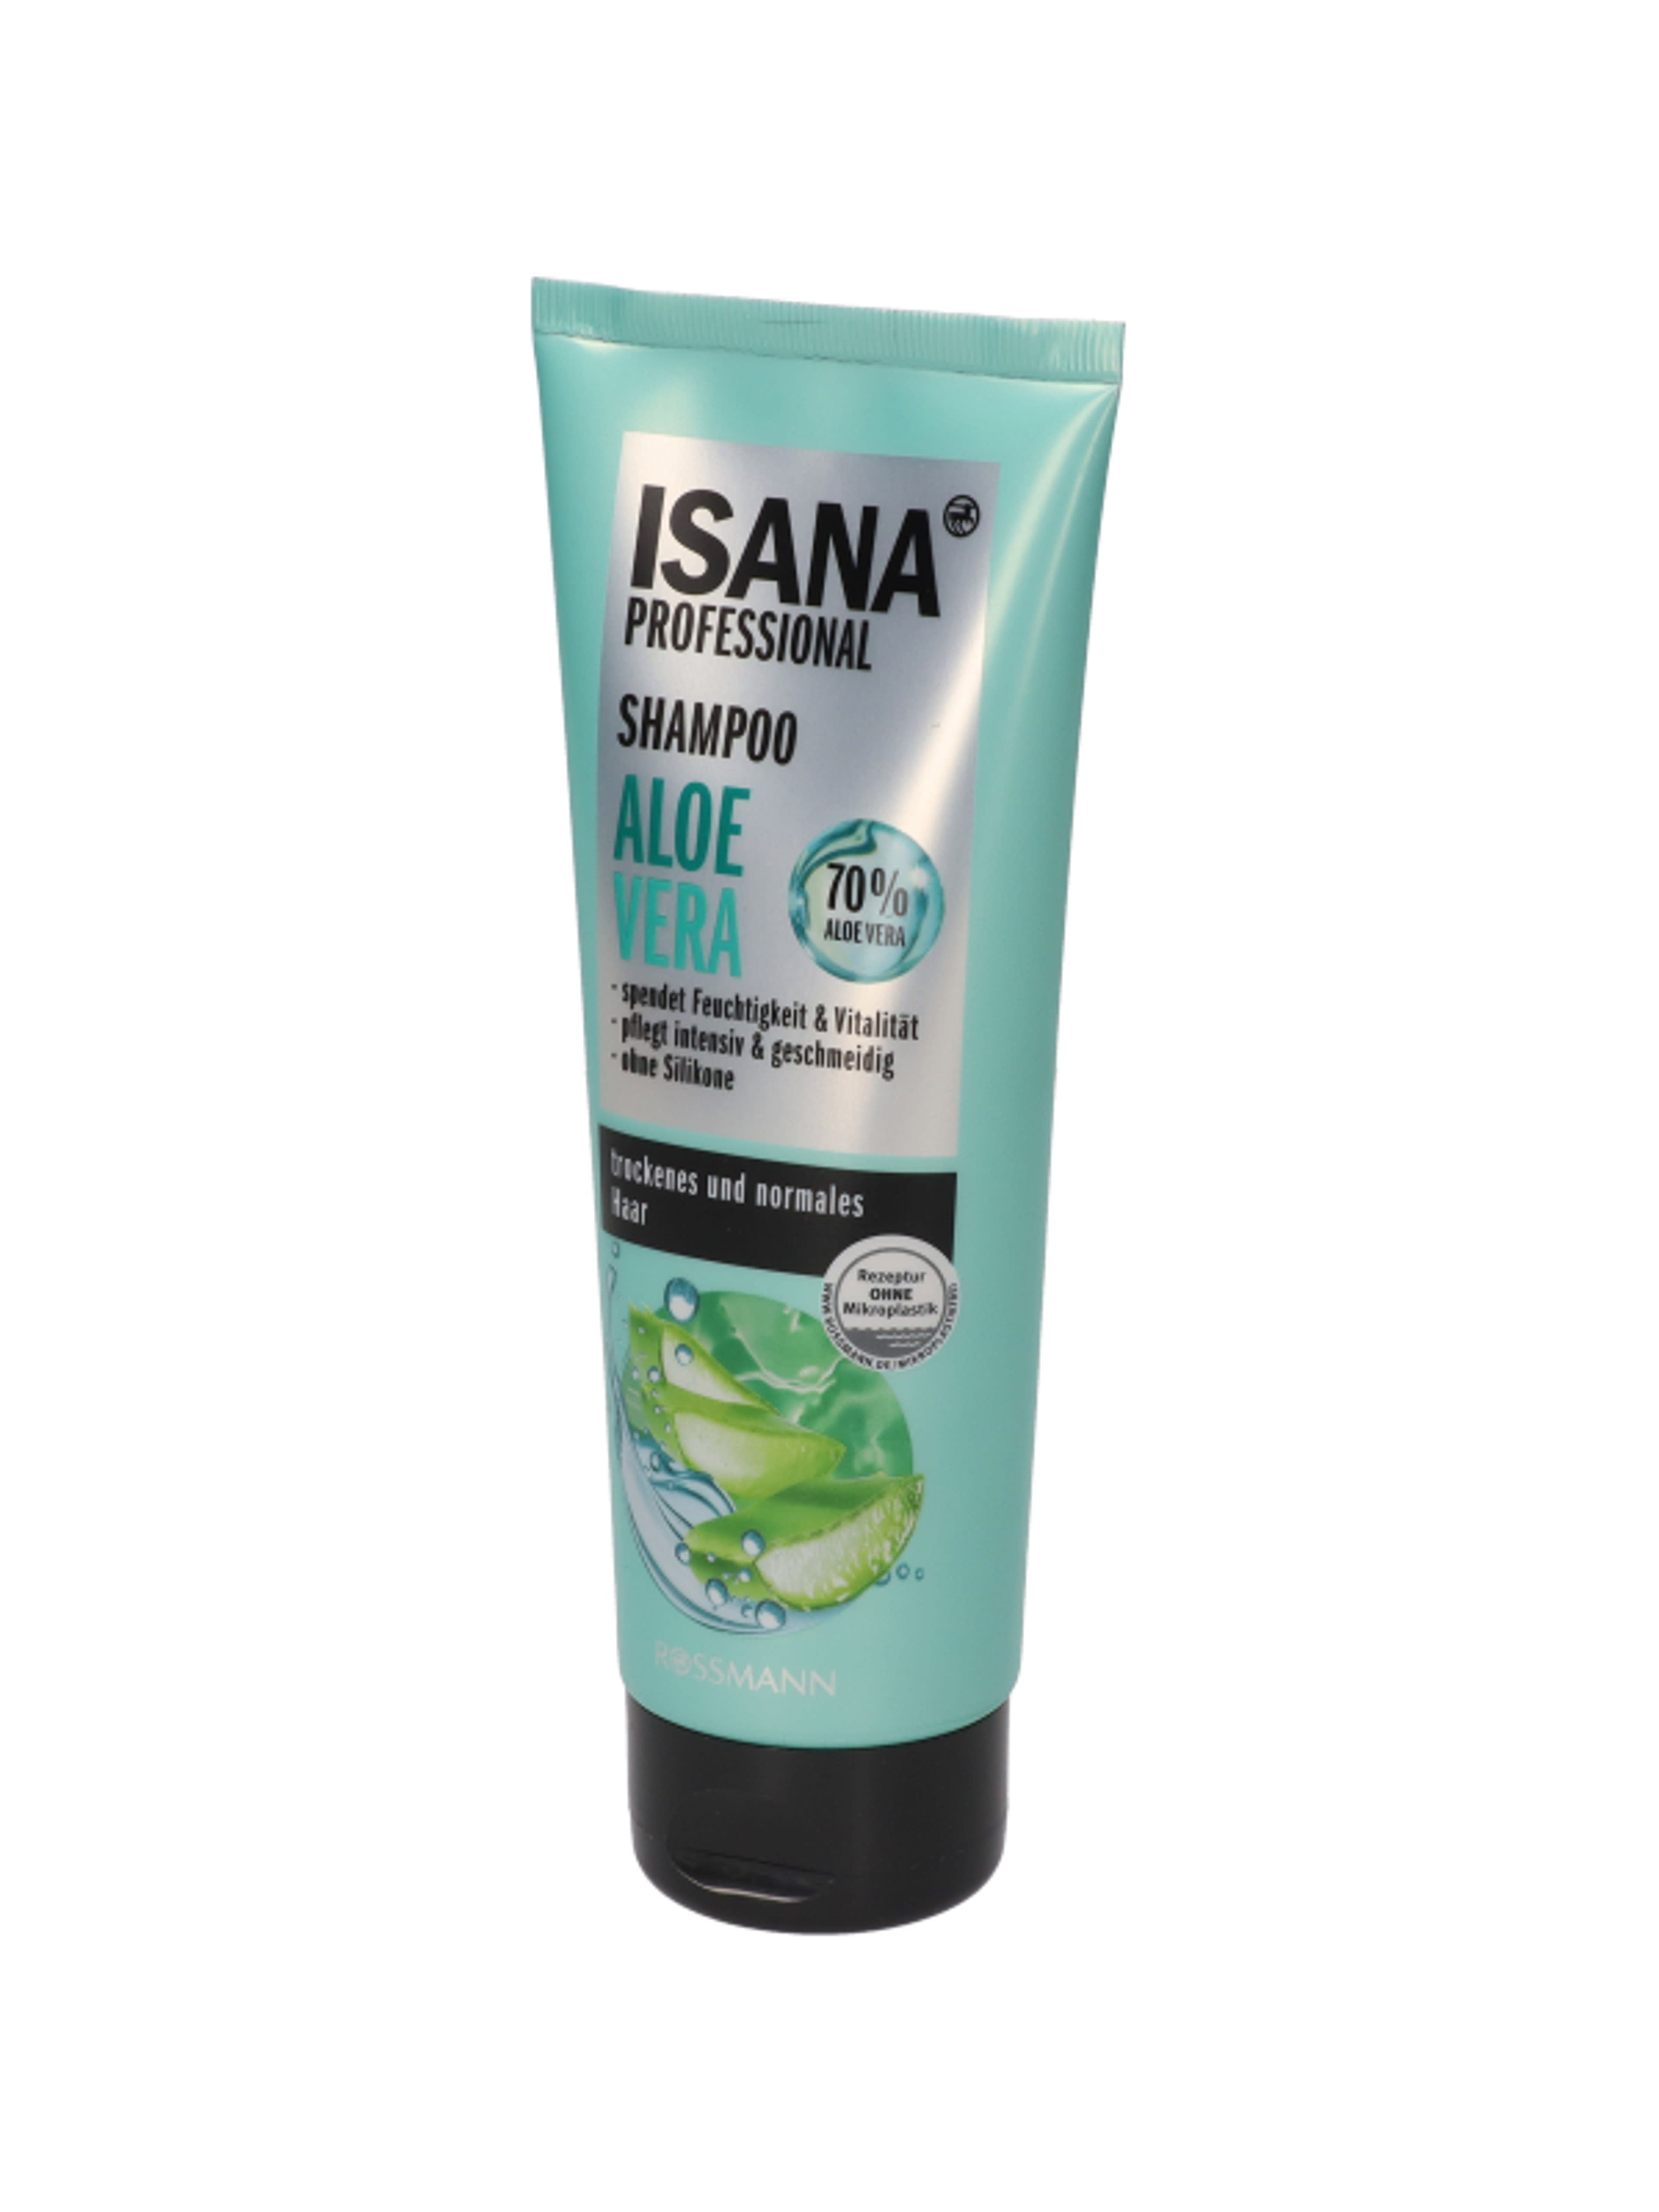 Isana Professional Aloe Vera sampon - 250 ml-2